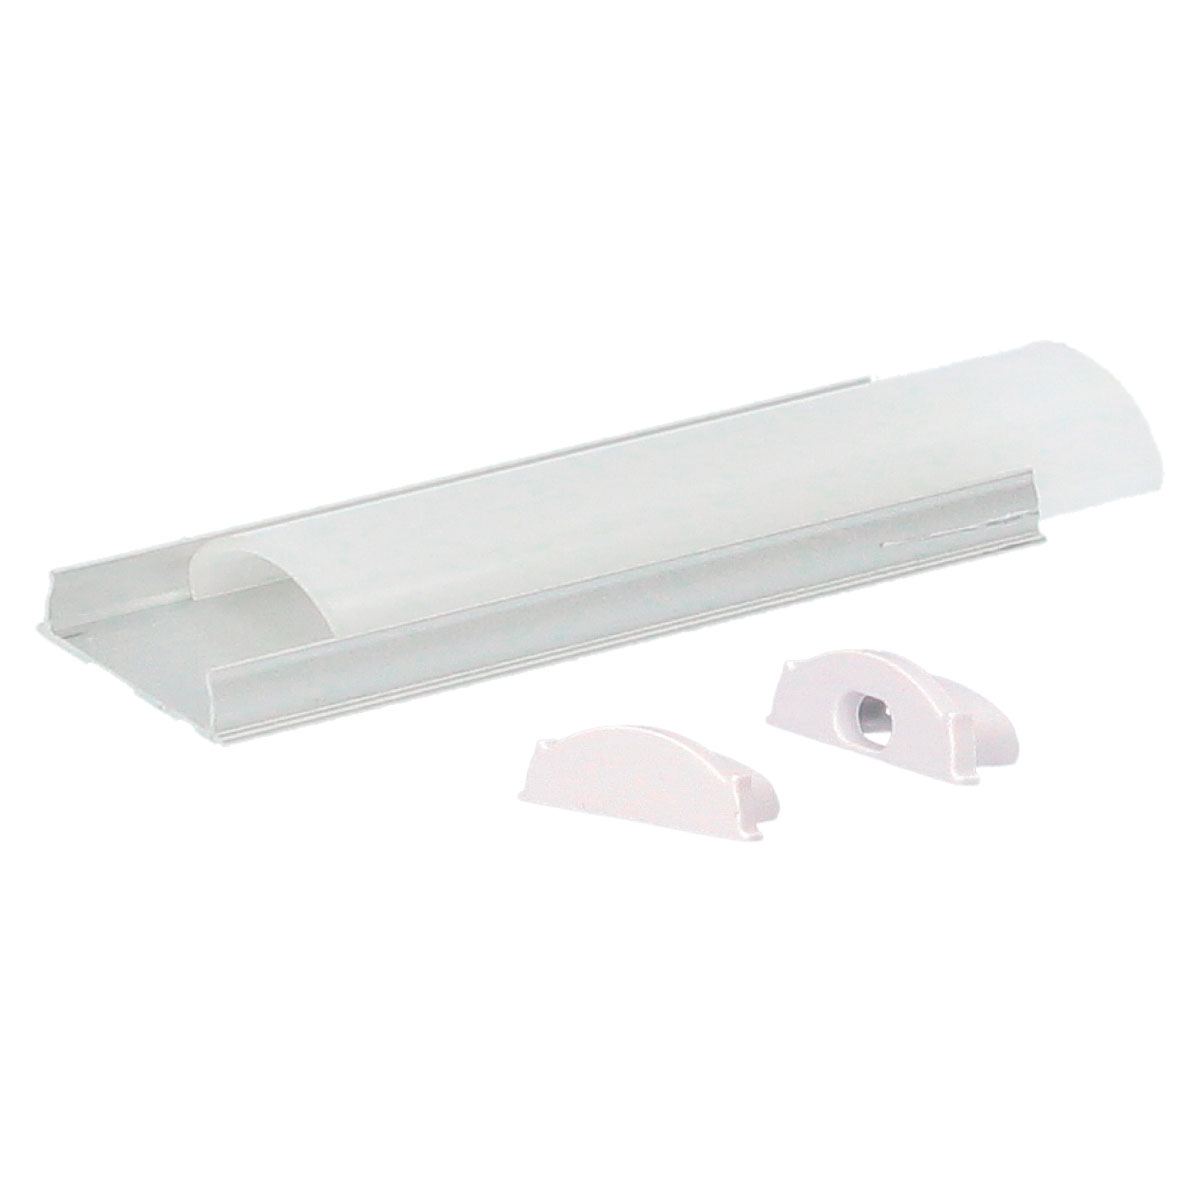 Kit perfil alumínio translúcido superfície oval 2 m para tiras LED até 14 mm